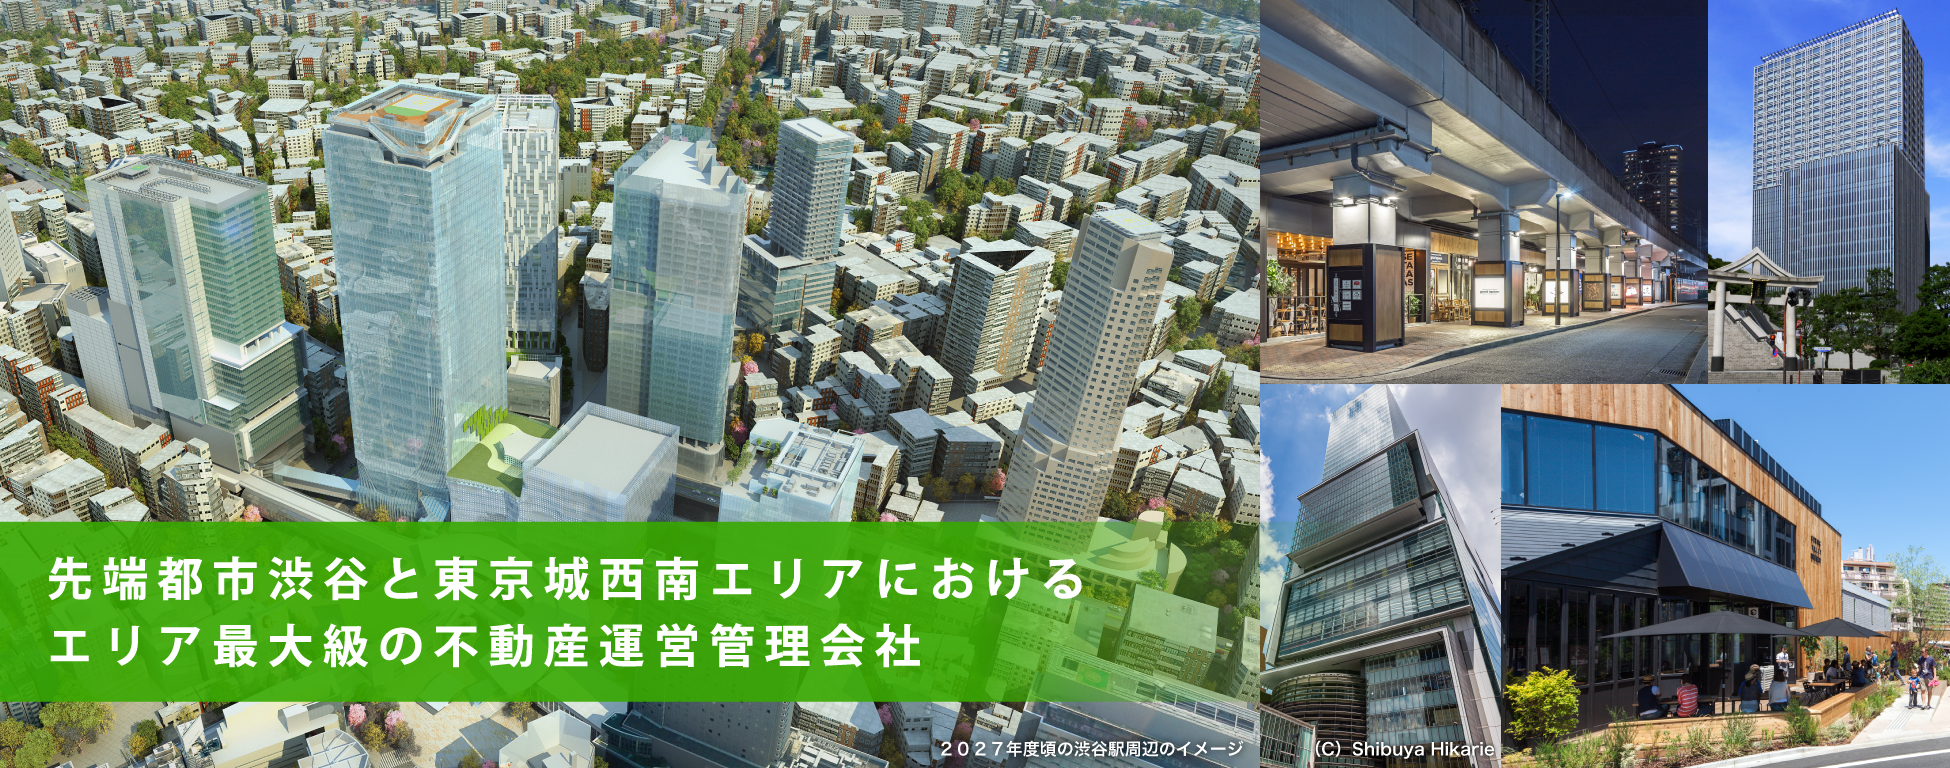 先端都市渋谷と東京城西南エリアにおける
エリア最大級の不動産プロパティマネジメント会社